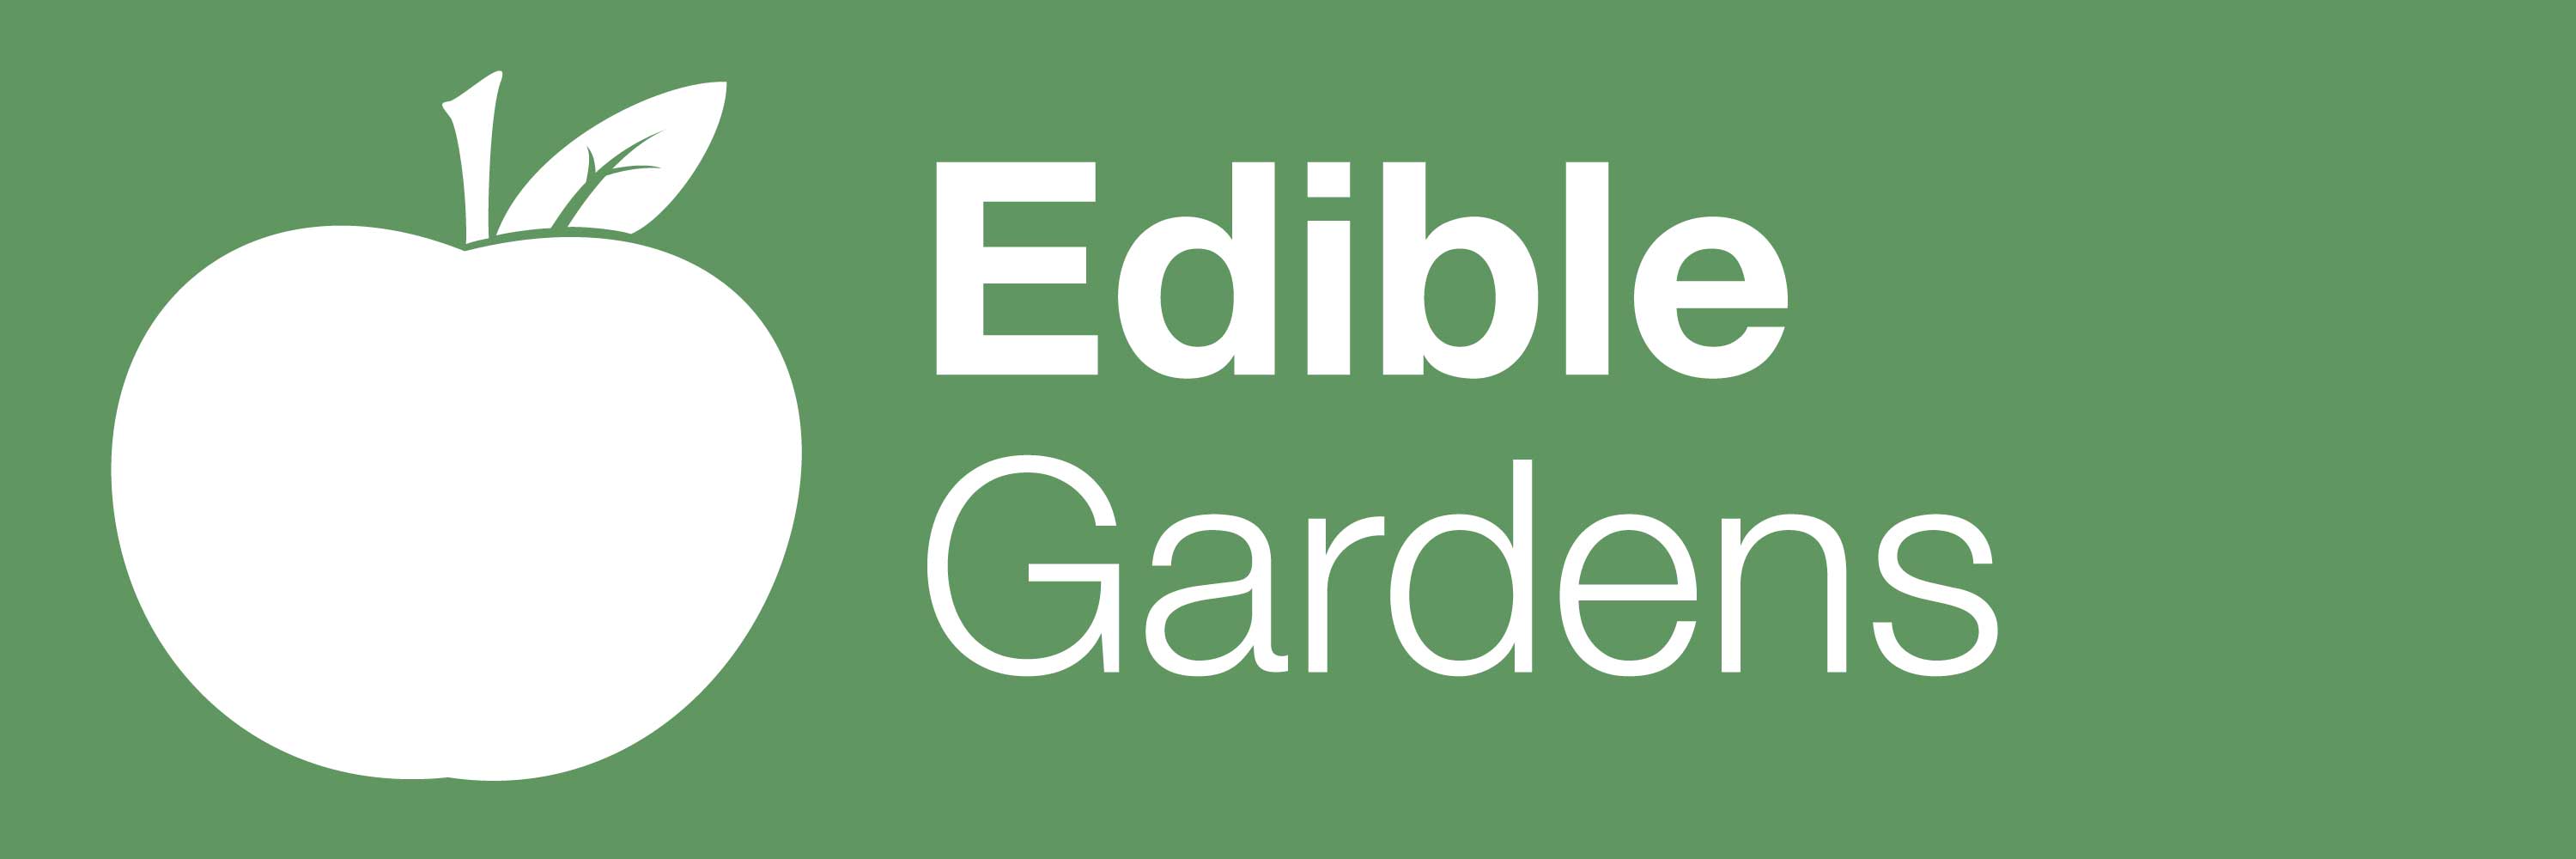 Edible Gardening Banner